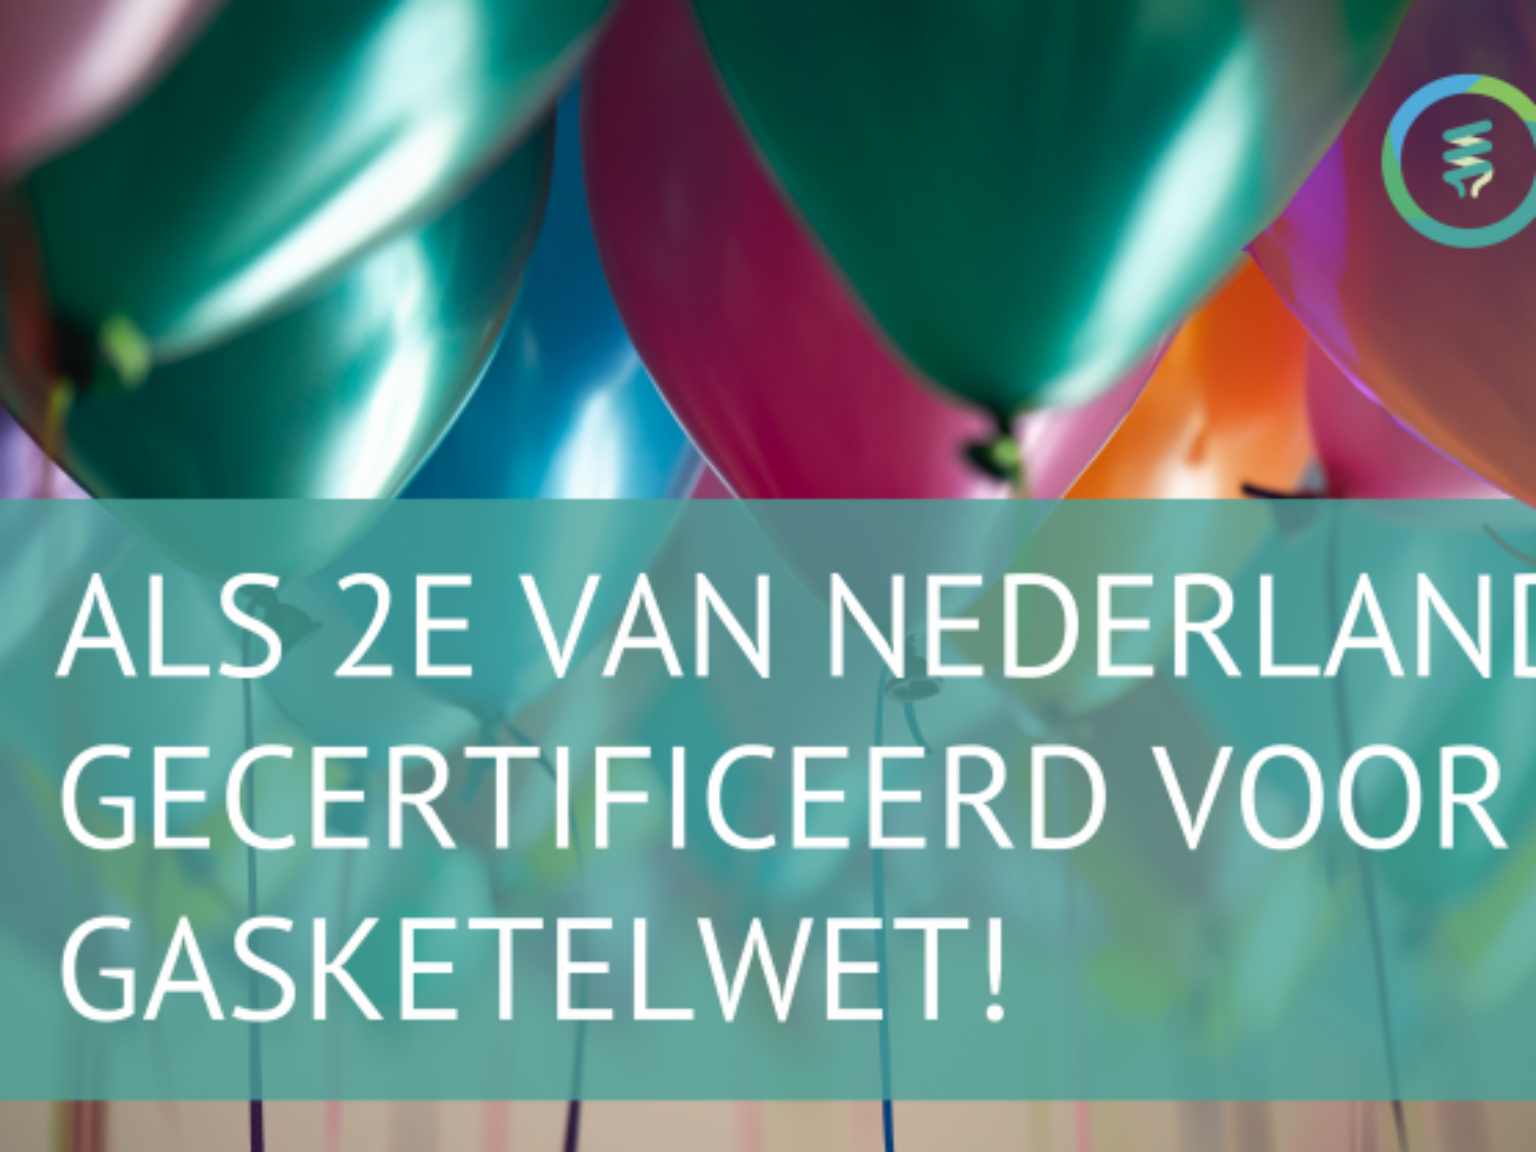 TTB als 2e gecertificeerde bedrijf van Nederland!